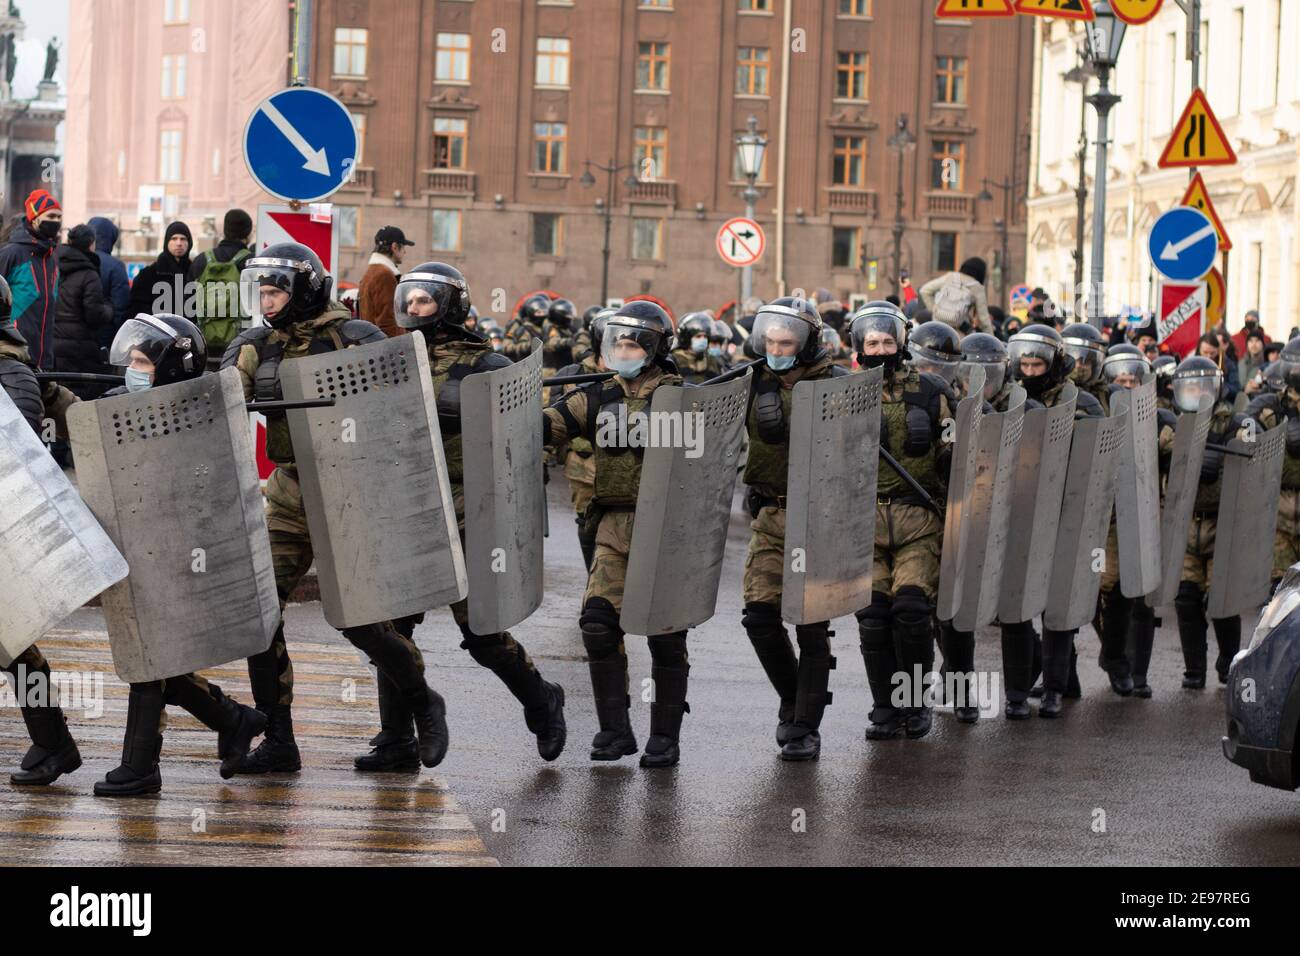 Saint-Pétersbourg, Russie - 31 janvier 2021 : la police est armée pour protester contre les combats de rue, éditorial Banque D'Images